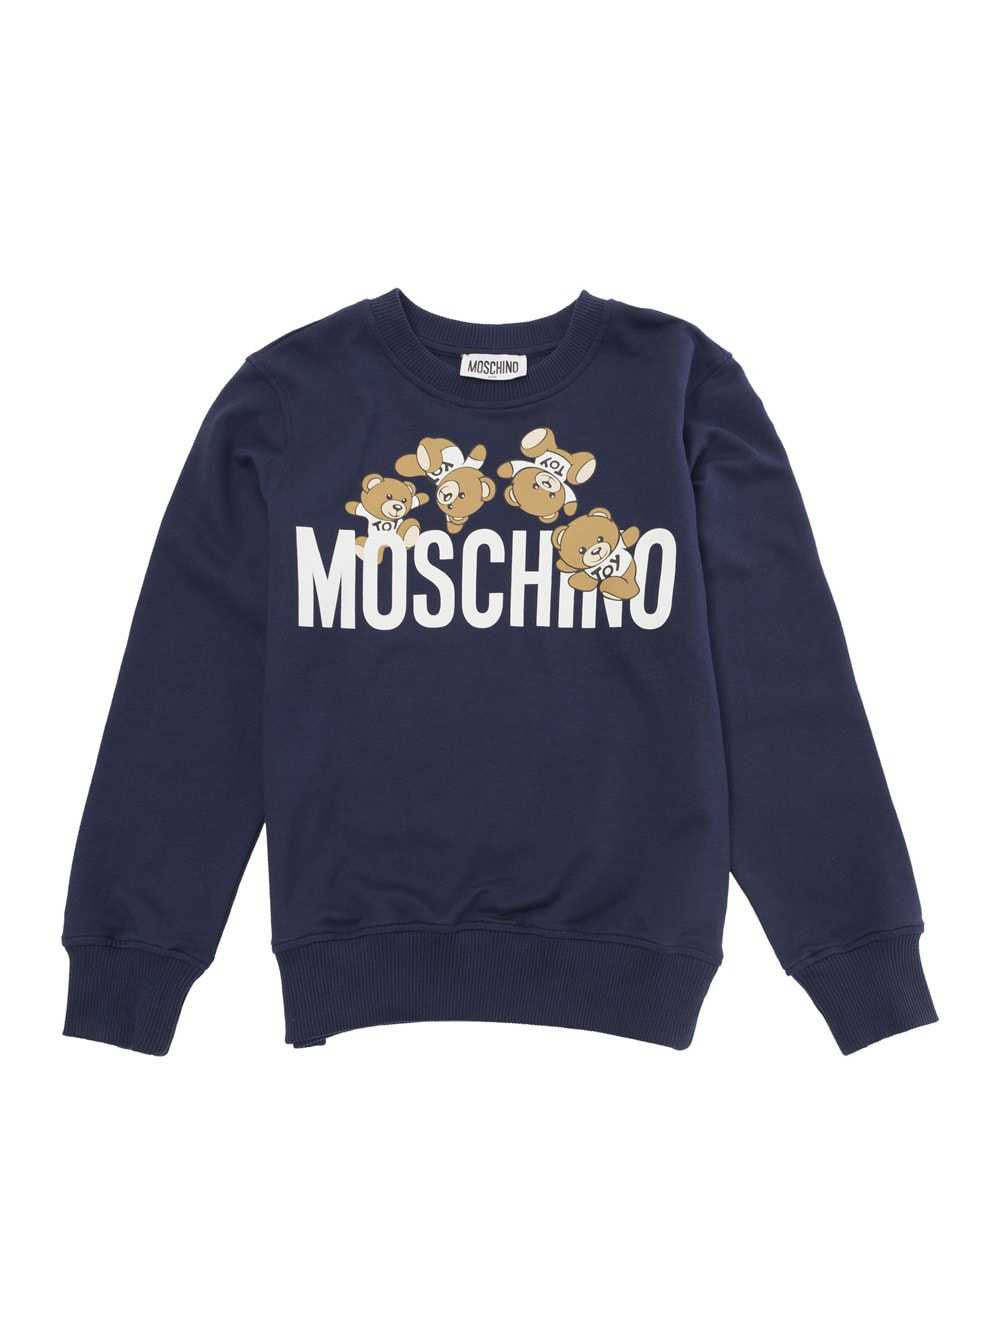 Moschino Kids' Sweatshirt In Blu